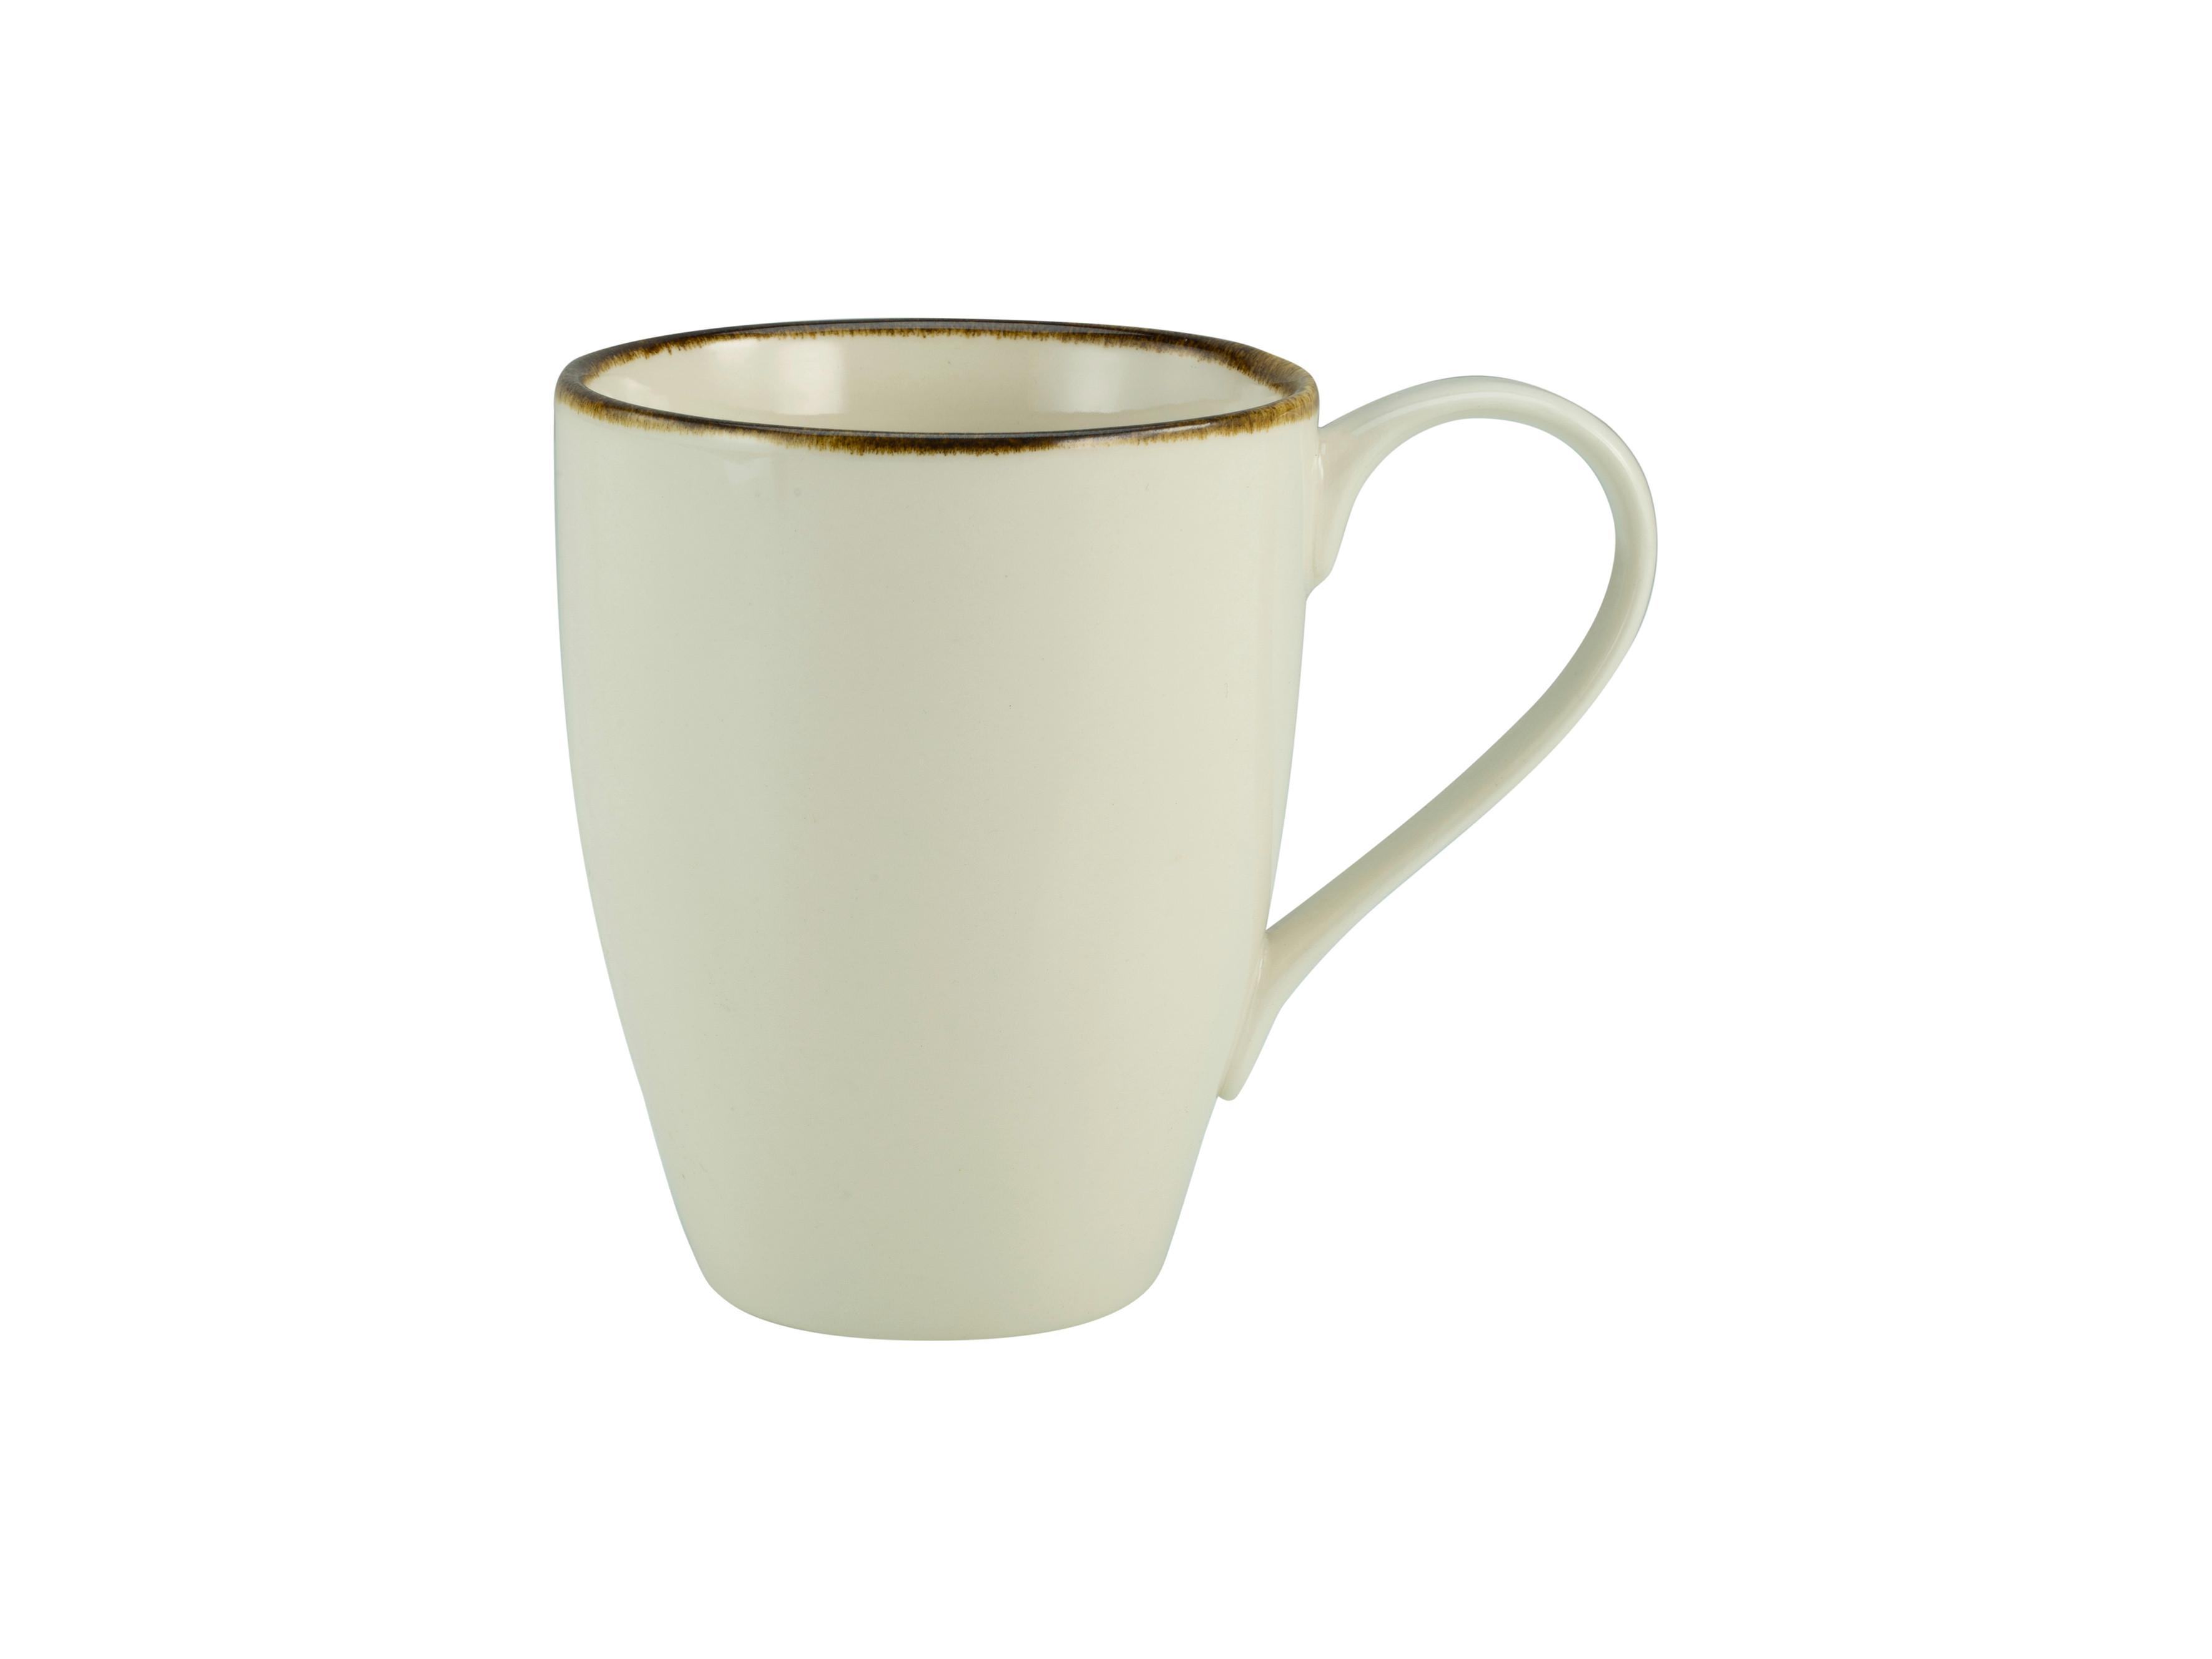 KUBEK DO KAWY LINEN - kremowy/biały, ceramika (13/9/11cm) - Premium Living